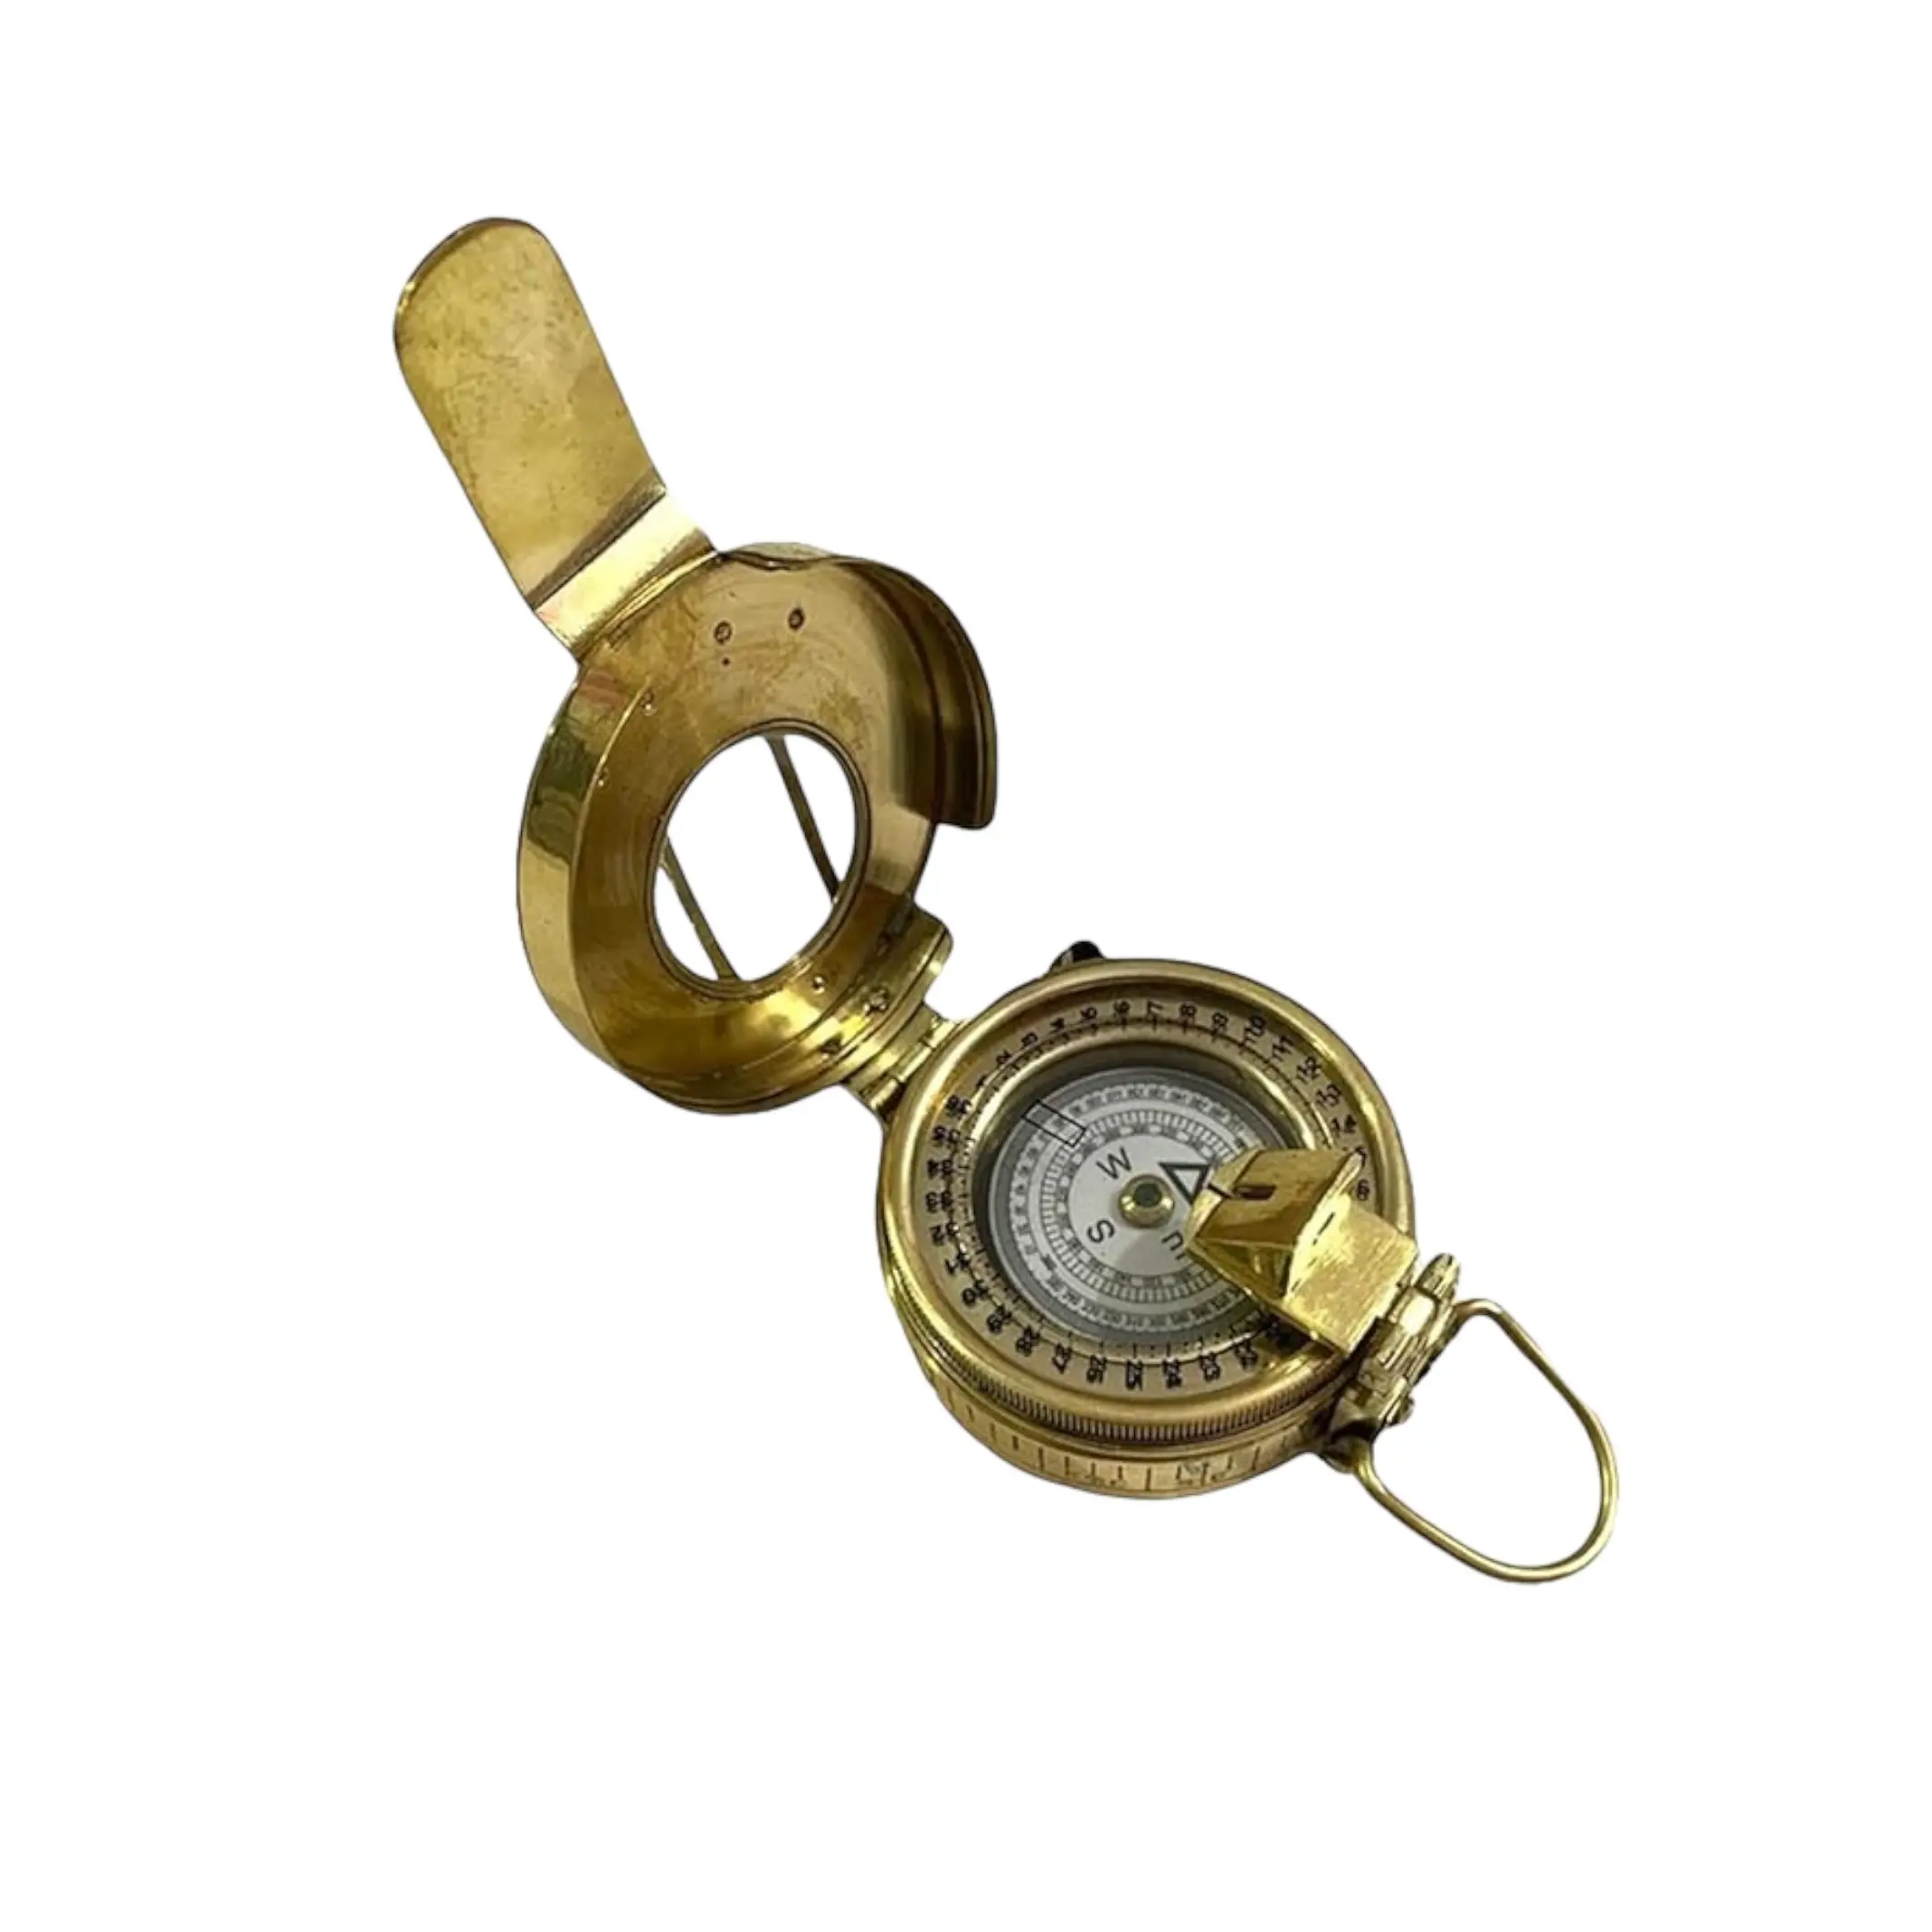 Top Bán Hải Lý Rắn Brass La Bàn Handmade Pocket Compass Thu Mục Từ Ấn Độ Xuất Khẩu